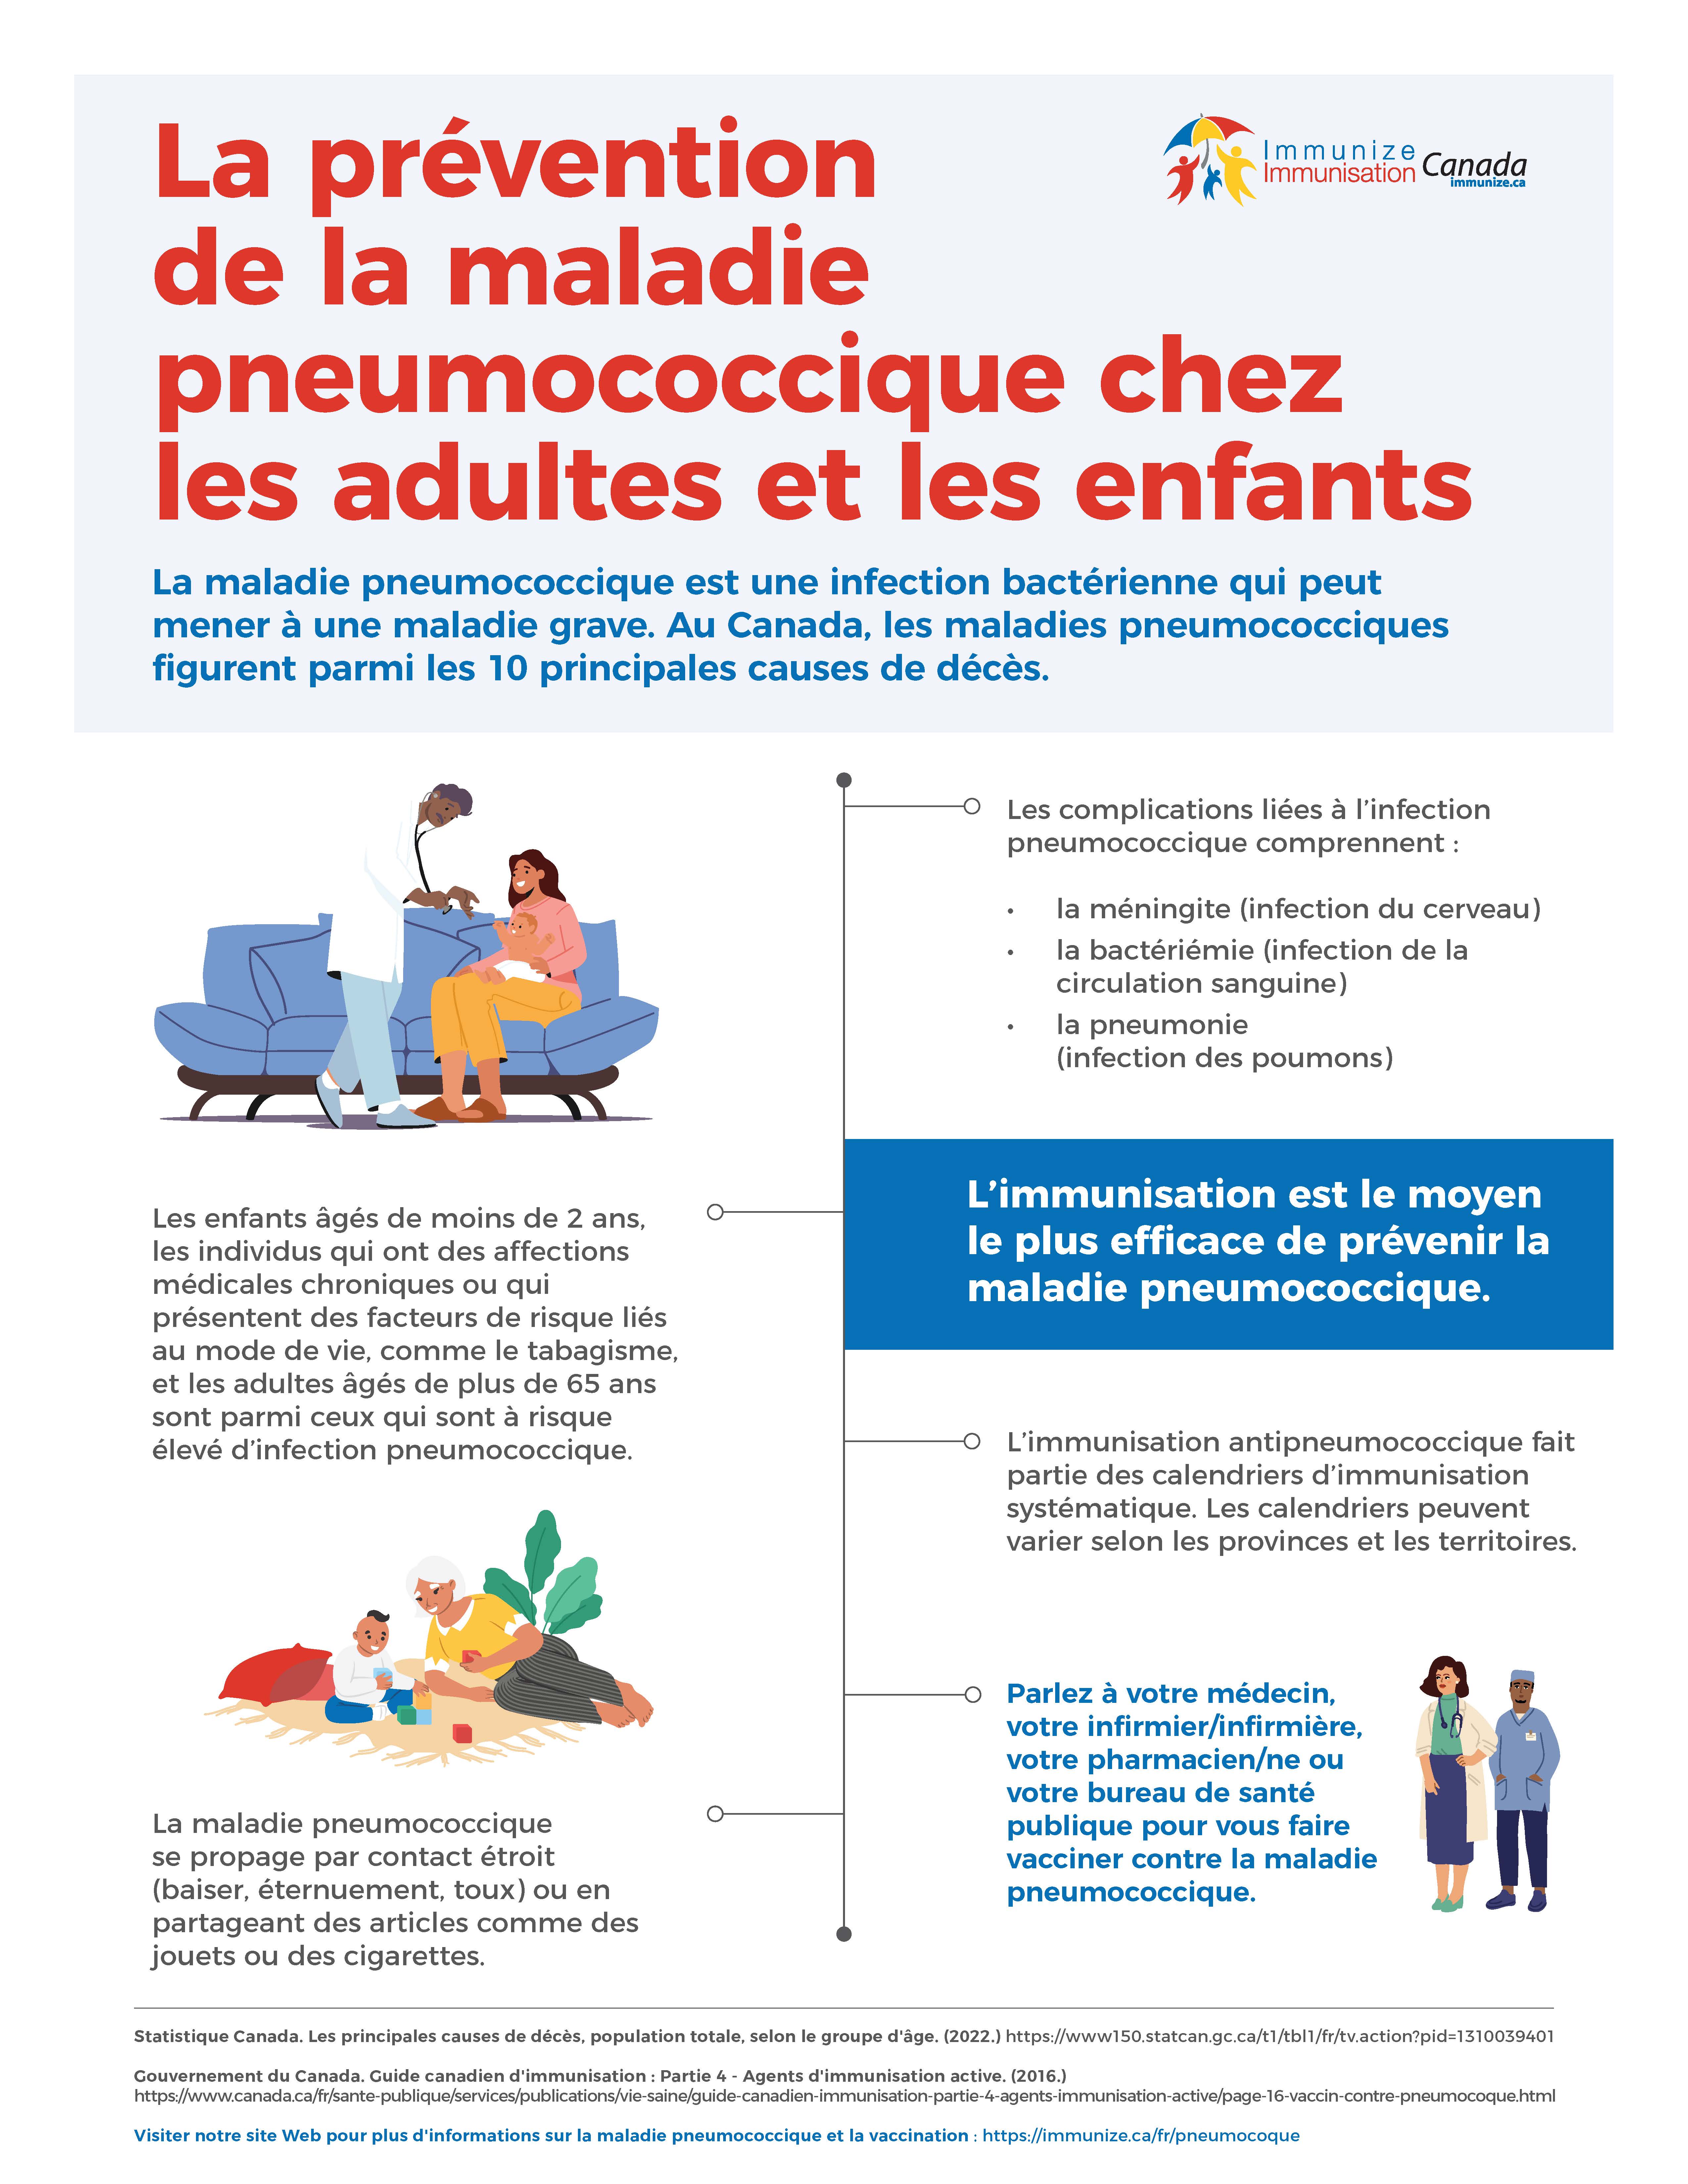 La prévention de la maladie pneumococcique chez les adultes et les enfants